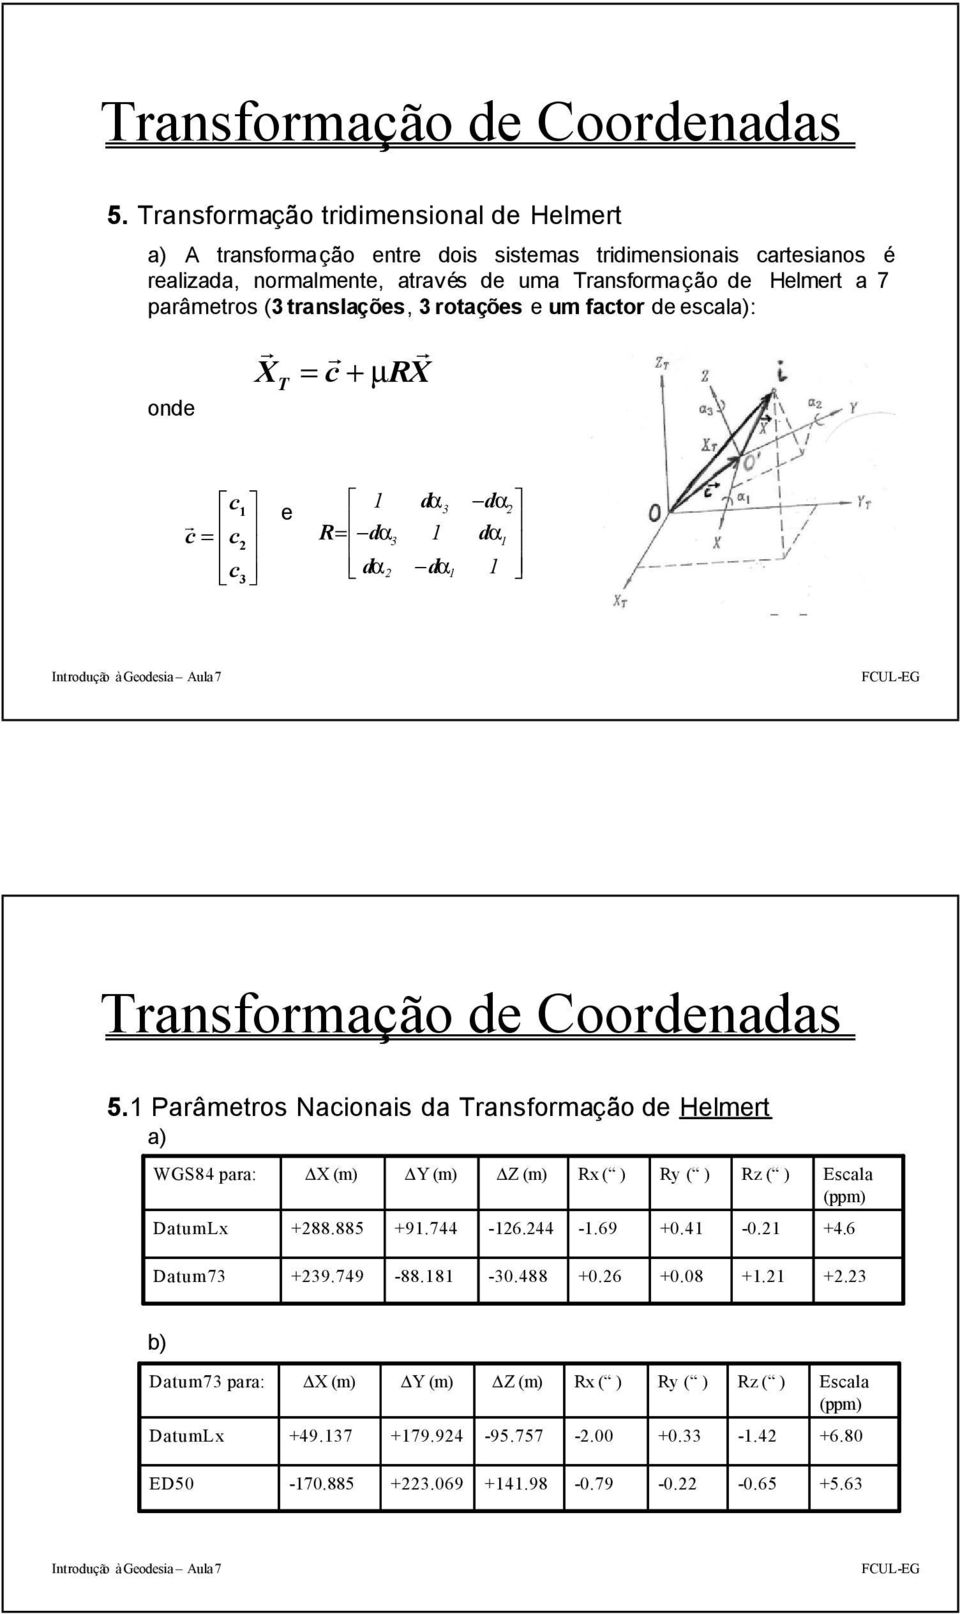 translações, 3 rotações e um factor de escala): onde r X T r r = c + mrx Øc1 ø r c = c 2 º c3 ß e Ø 1 R= -da3 º da 2 da 1 3 -da 1 -da2 ø da 1 1 ß 1 Parâmetros Nacionais da Transformação de Helmert